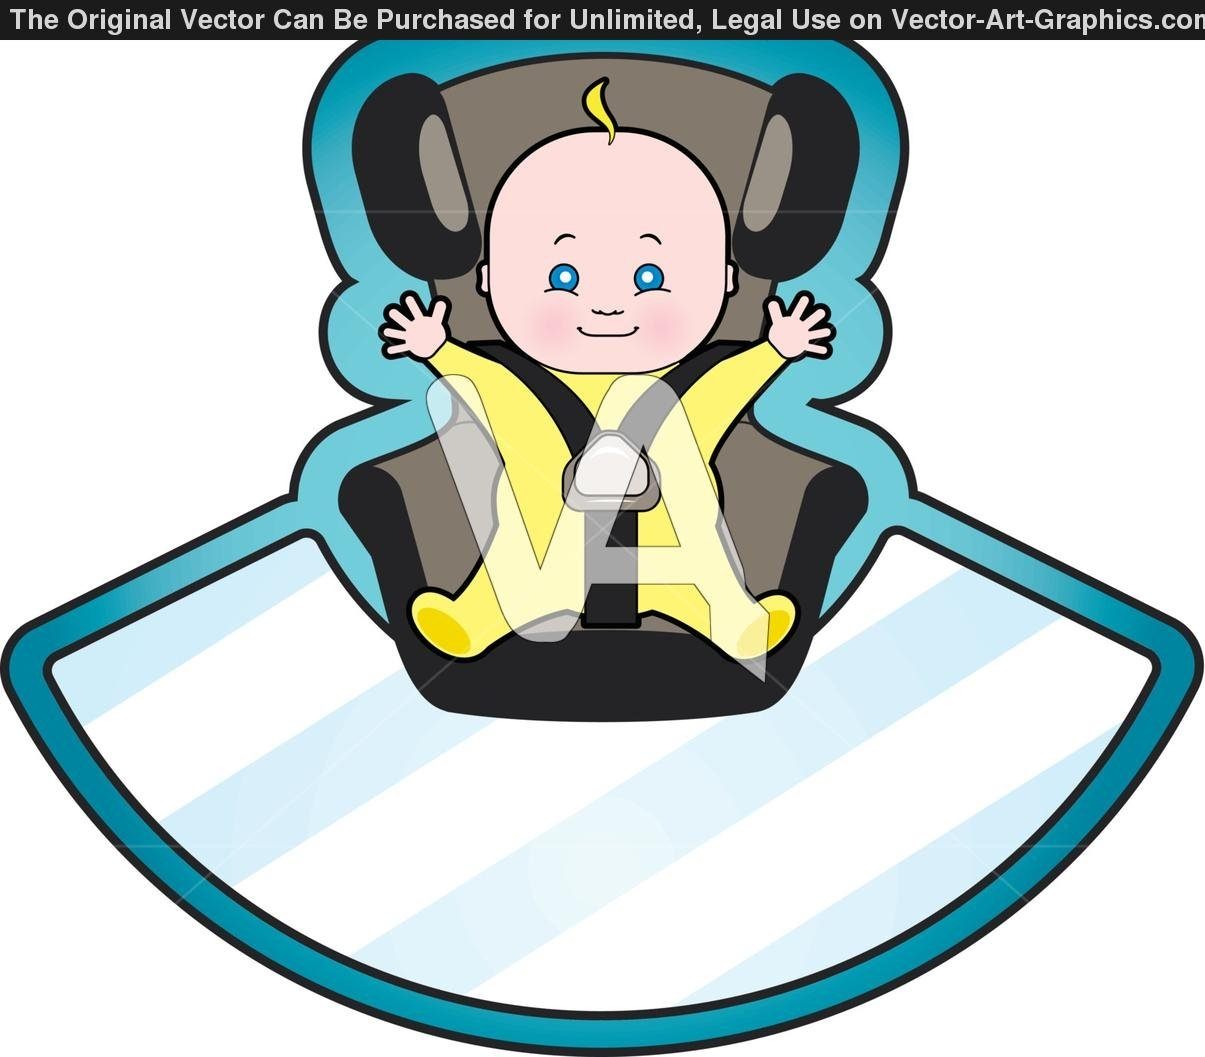 Автомобильное кресло мультяшное для детей